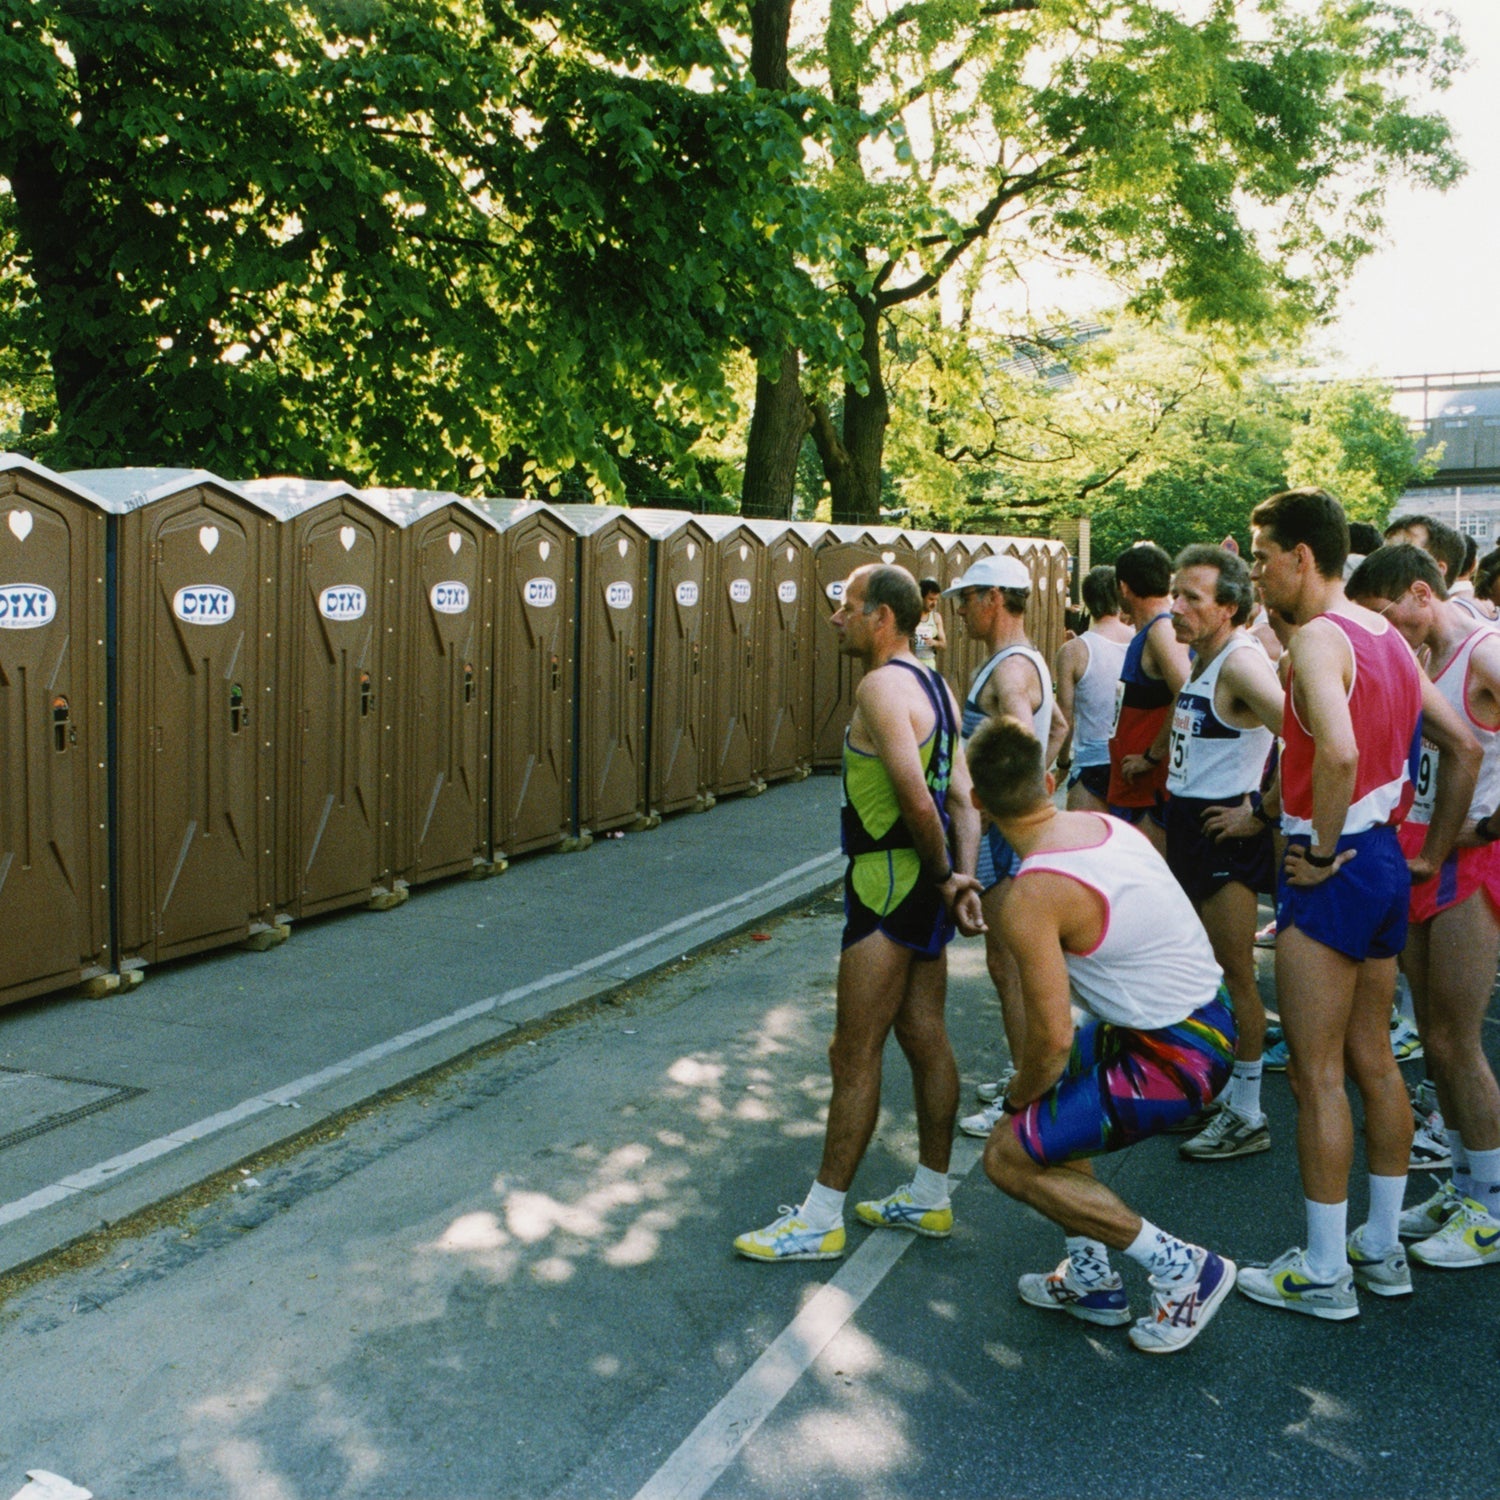 How Do Marathon Runners Go to the Bathroom